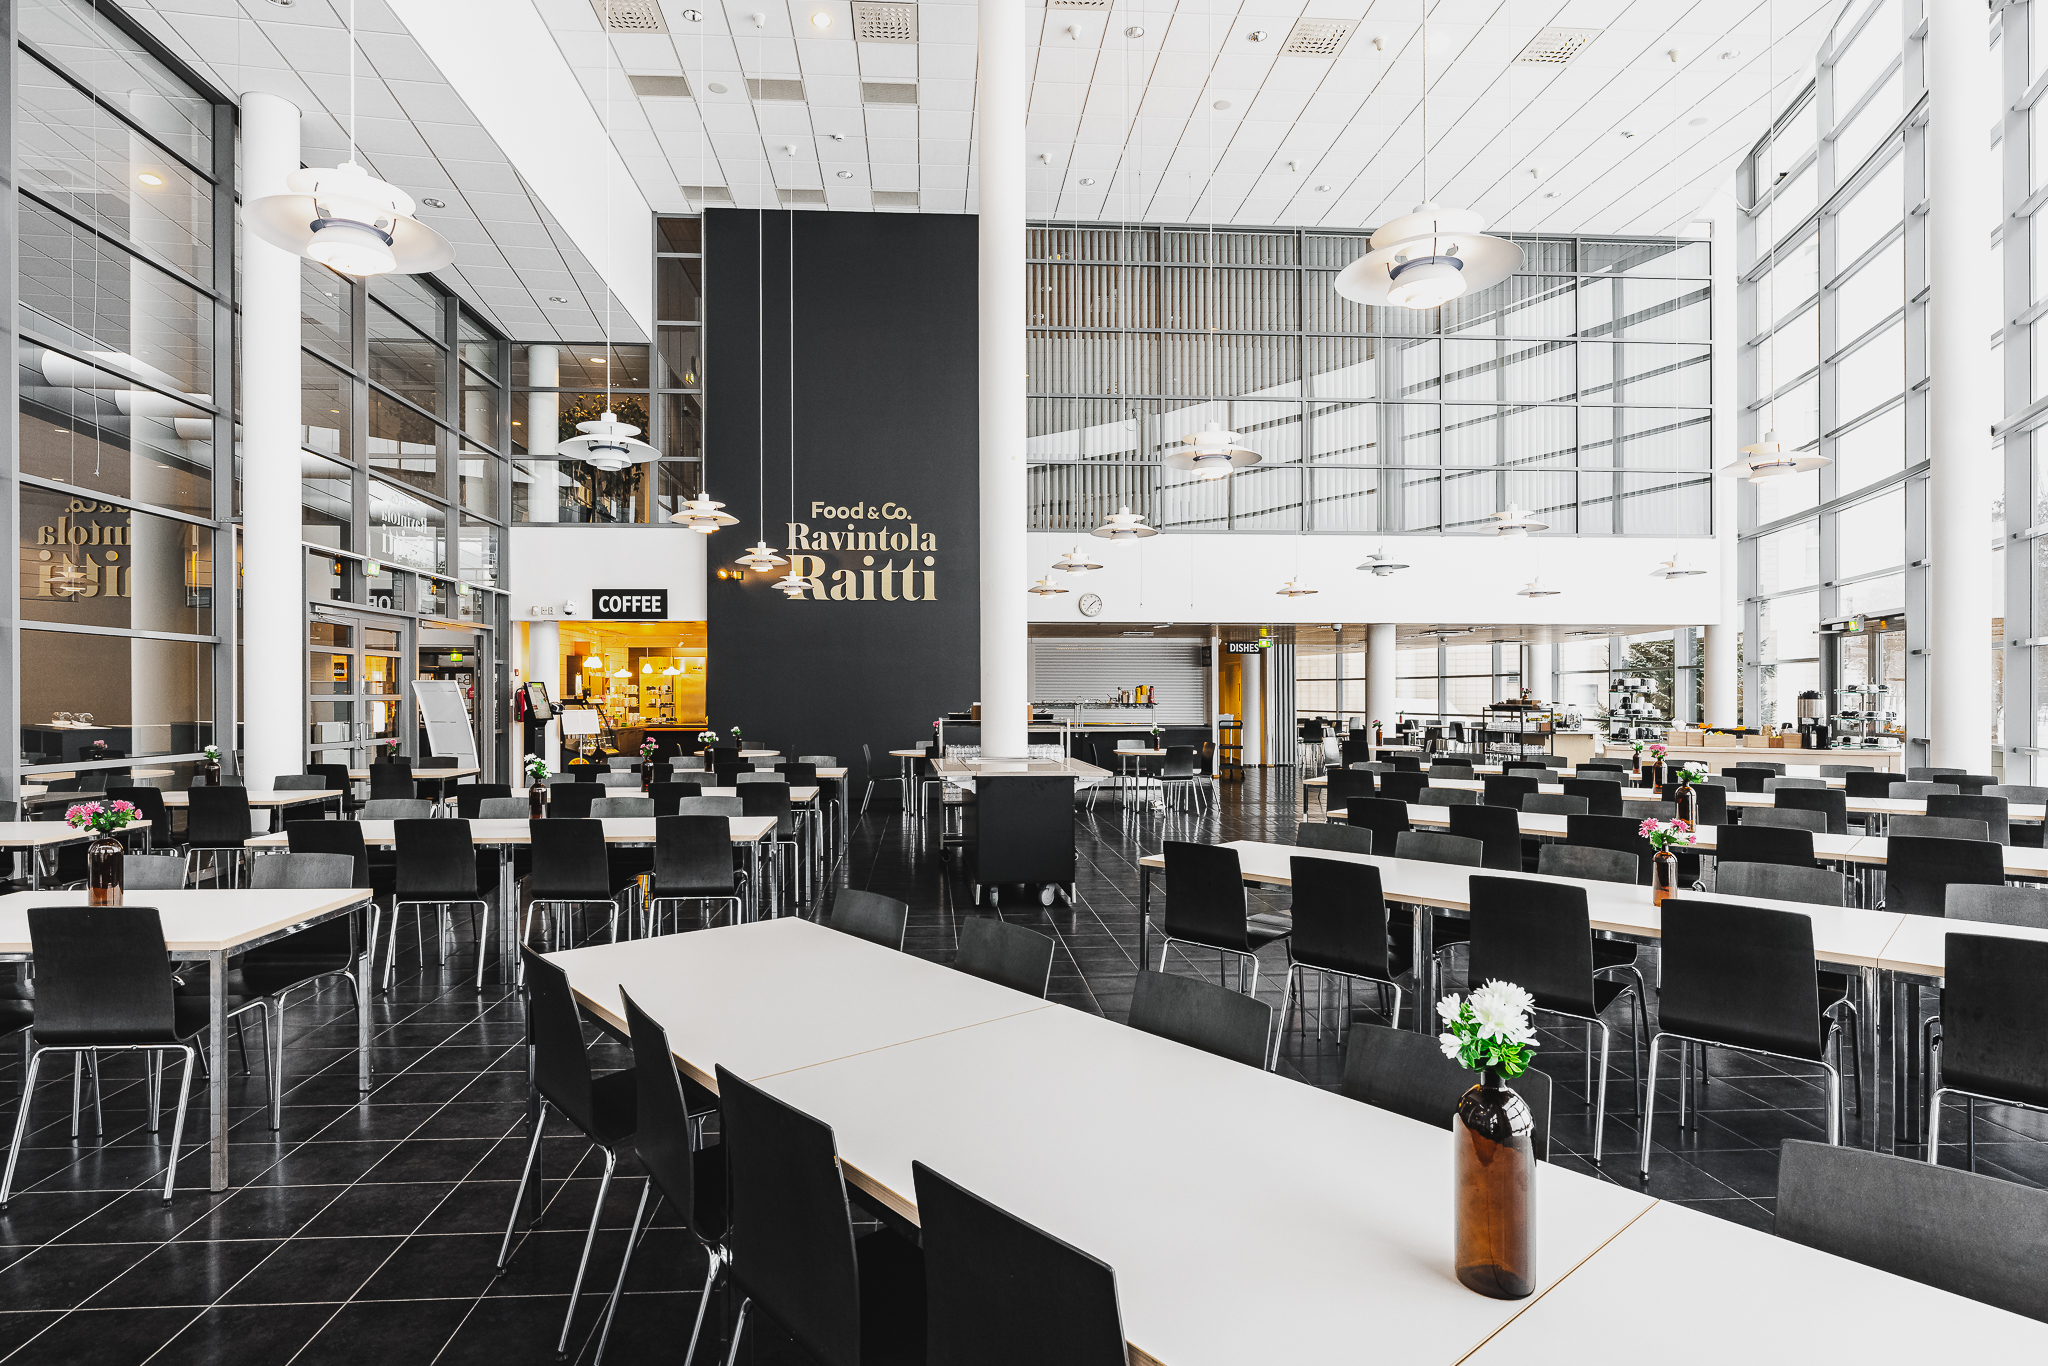 Ravintola Raitin pitkät pöydät ja avarat tilat tarjoavat mukavat puitteet ruokailijoille Seinäjoen Framilla.